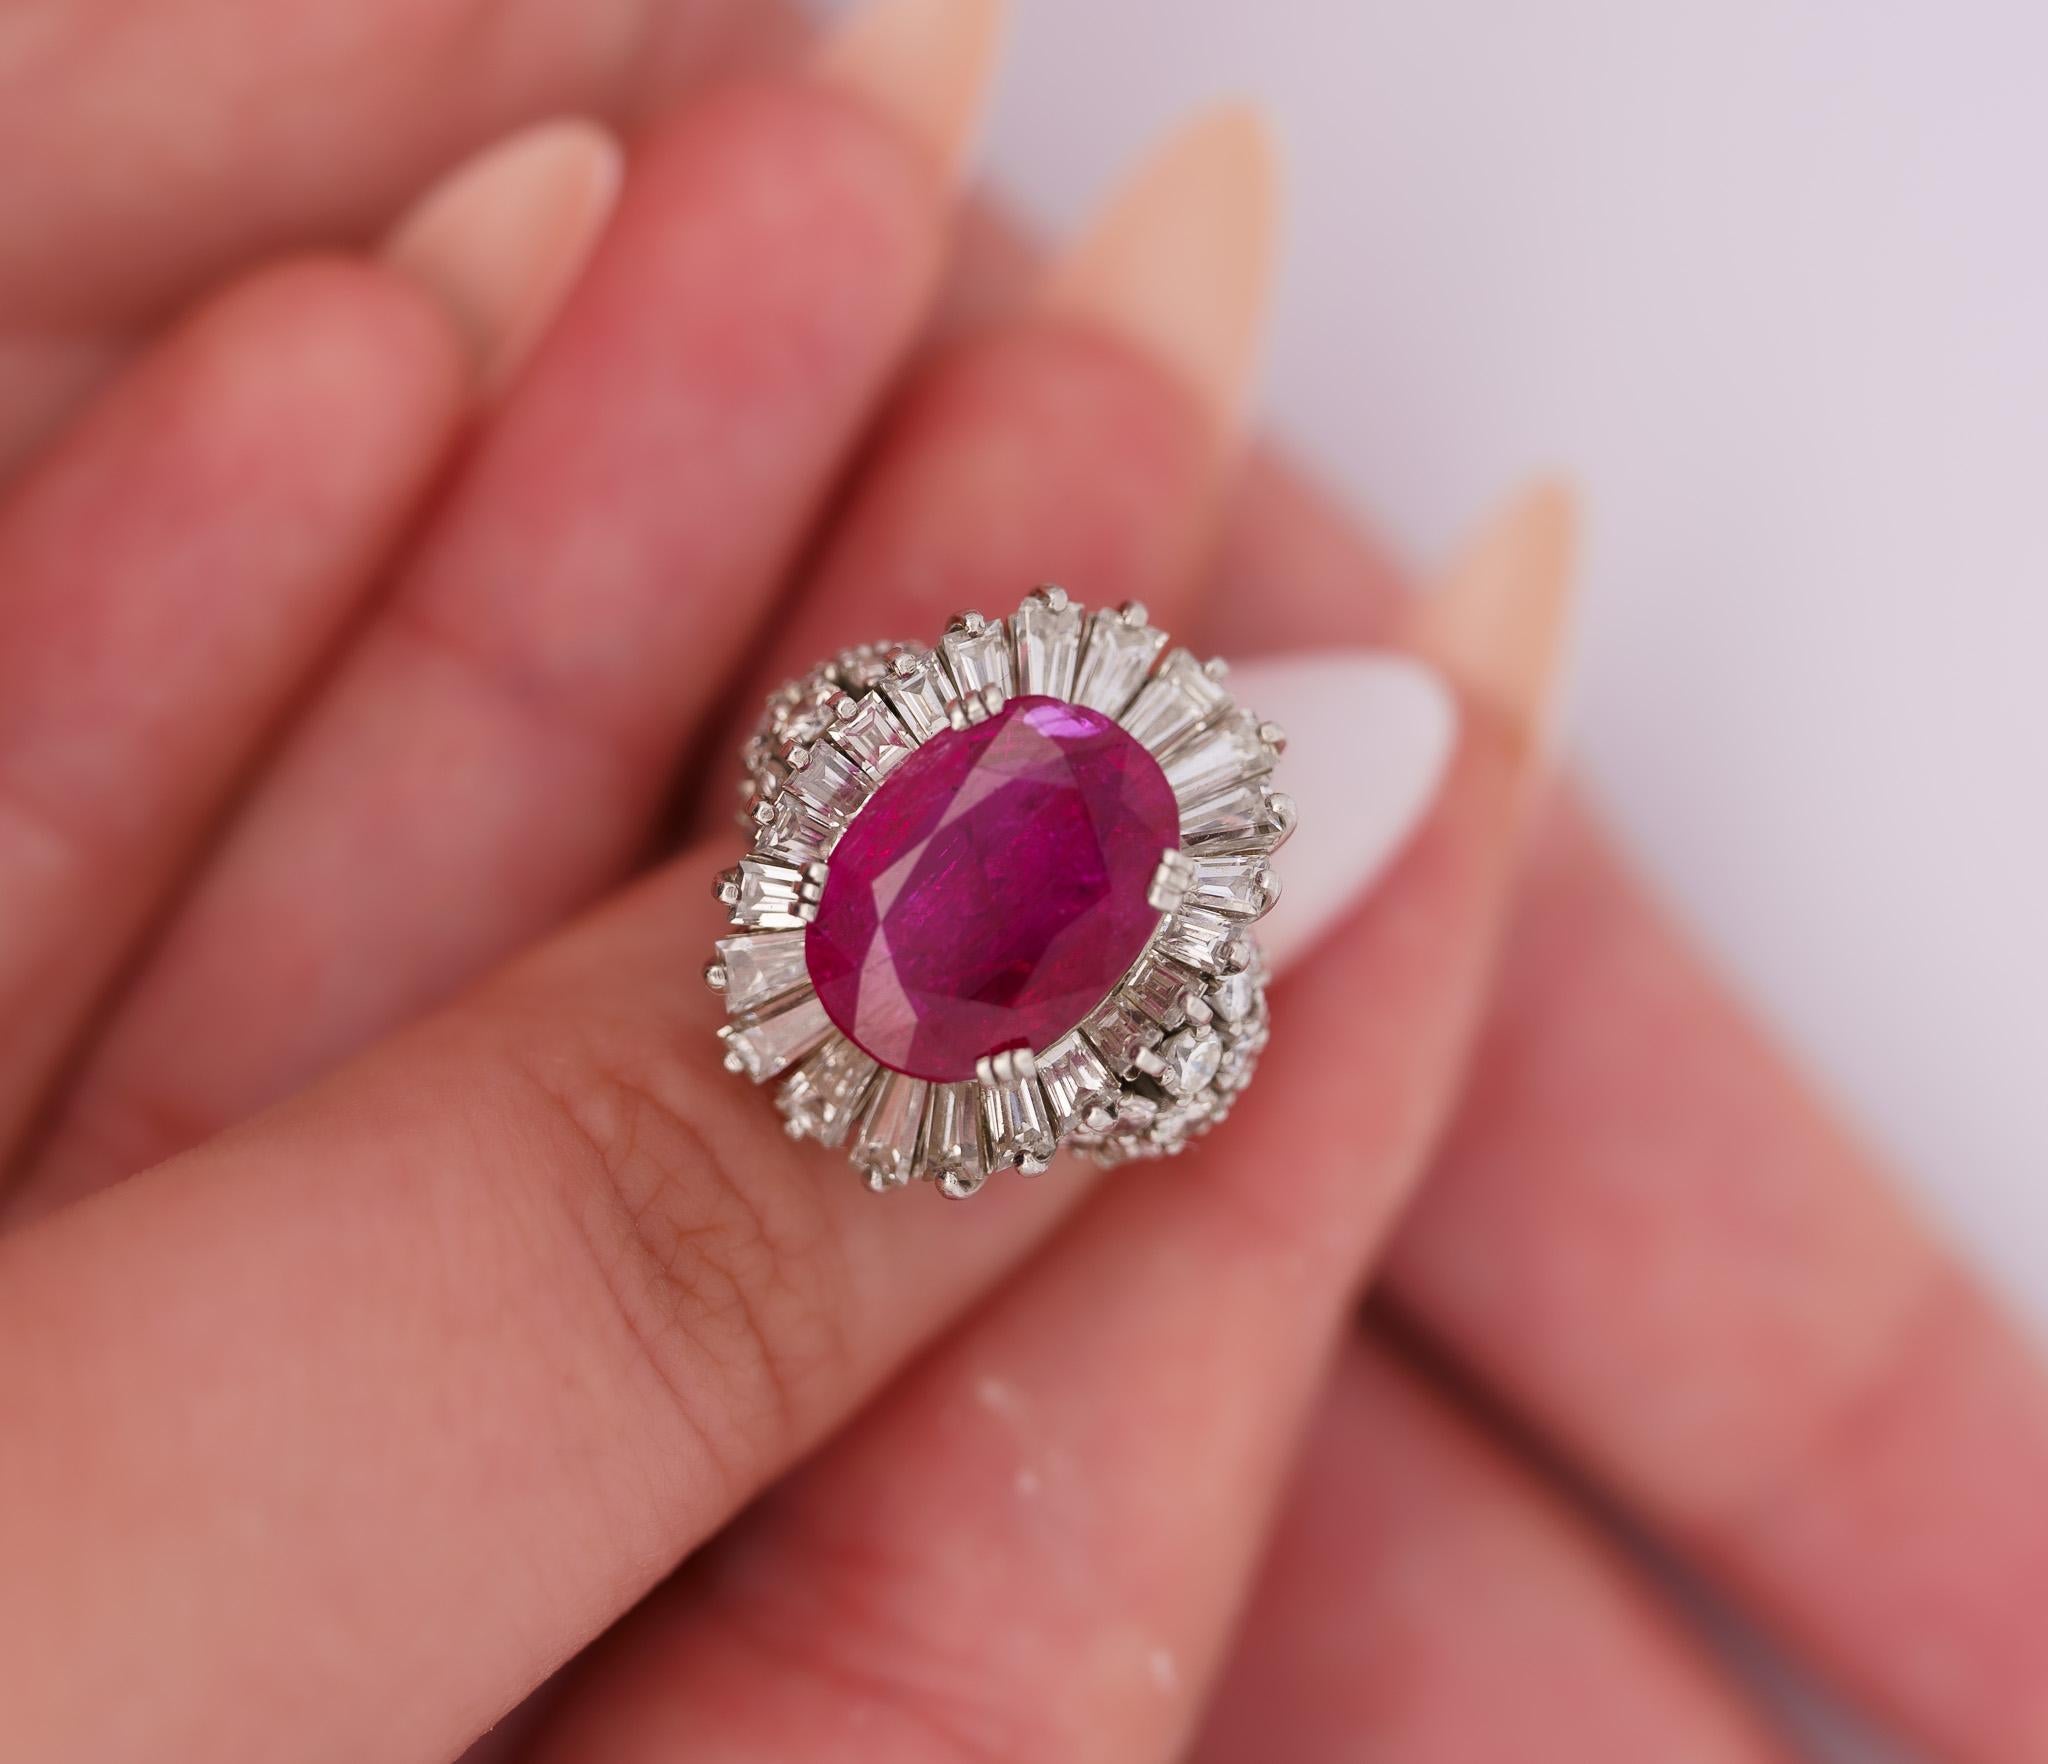 Vintage No Heat Burma Ruby & Diamond Cocktail Ring. 

Cette bague vintage est ornée d'un rubis rouge naturel de 6,95 carats, taillé en ovale et certifié AGL. Le rubis est associé à des pierres latérales en diamant, composées de 22 diamants blancs de